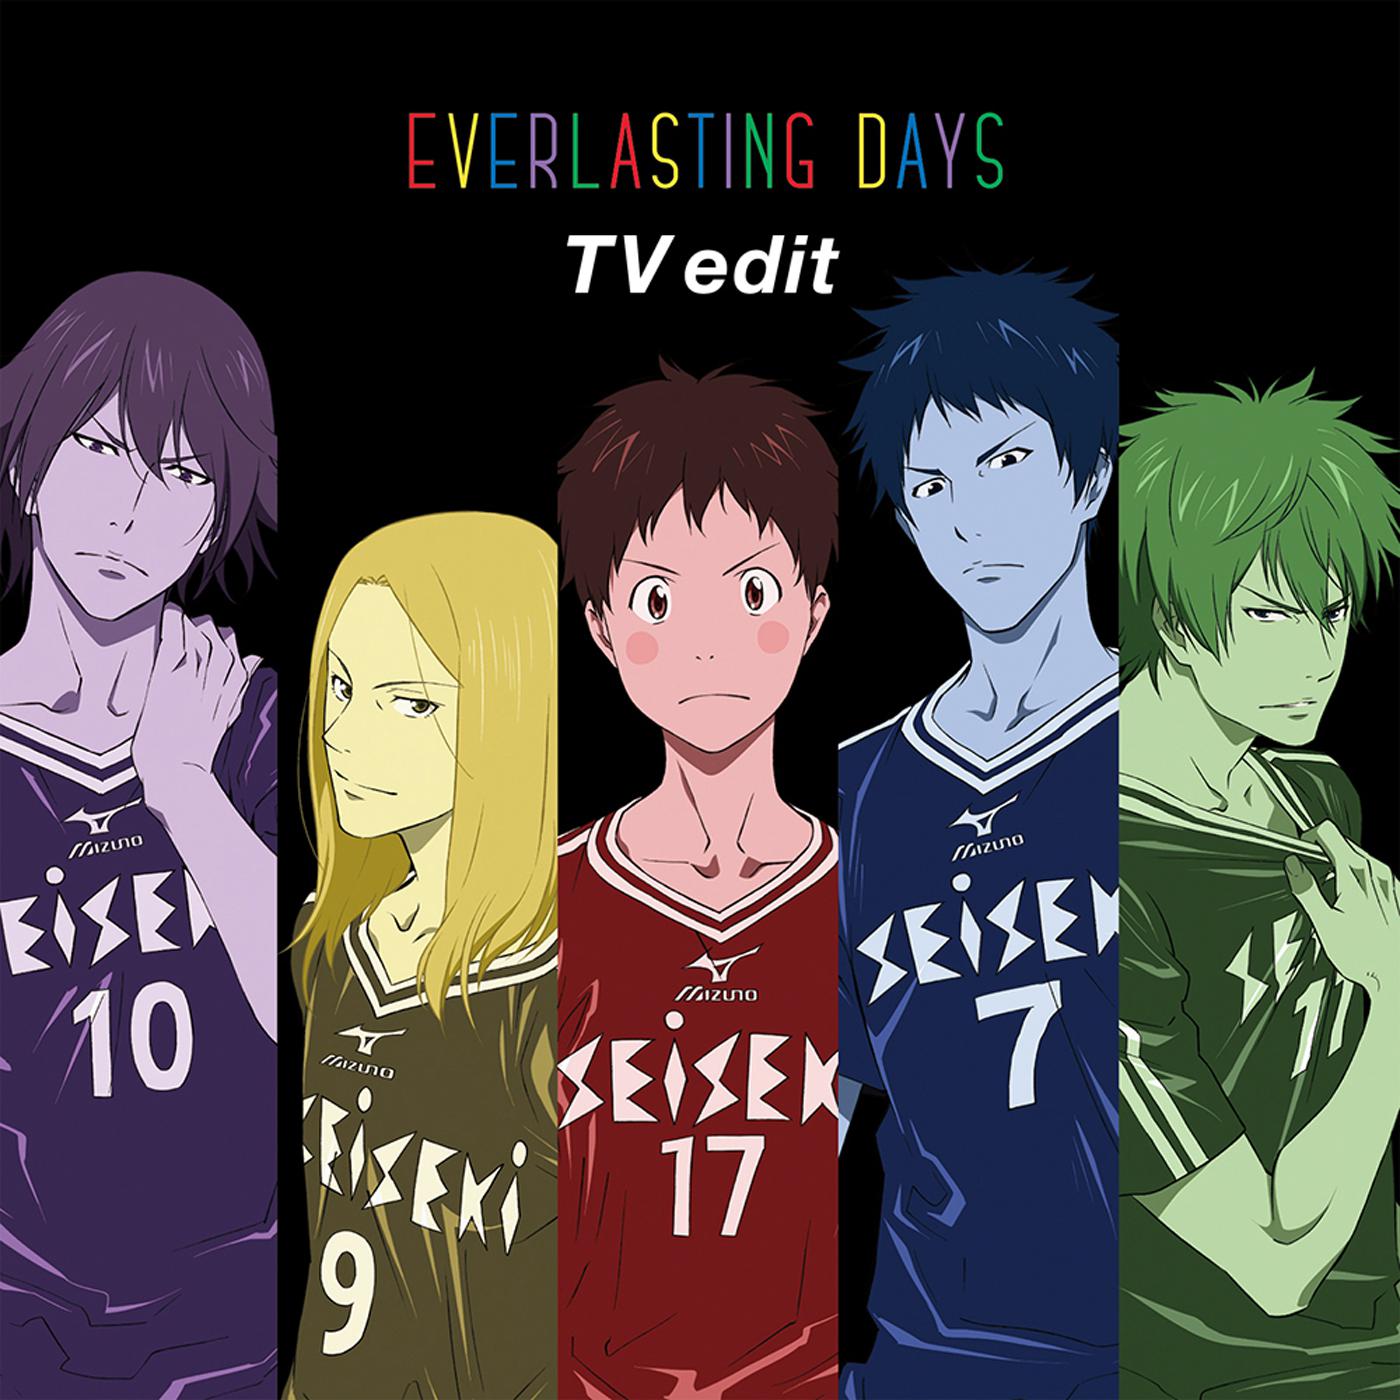 EVERLASTING DAYS (TV edit)